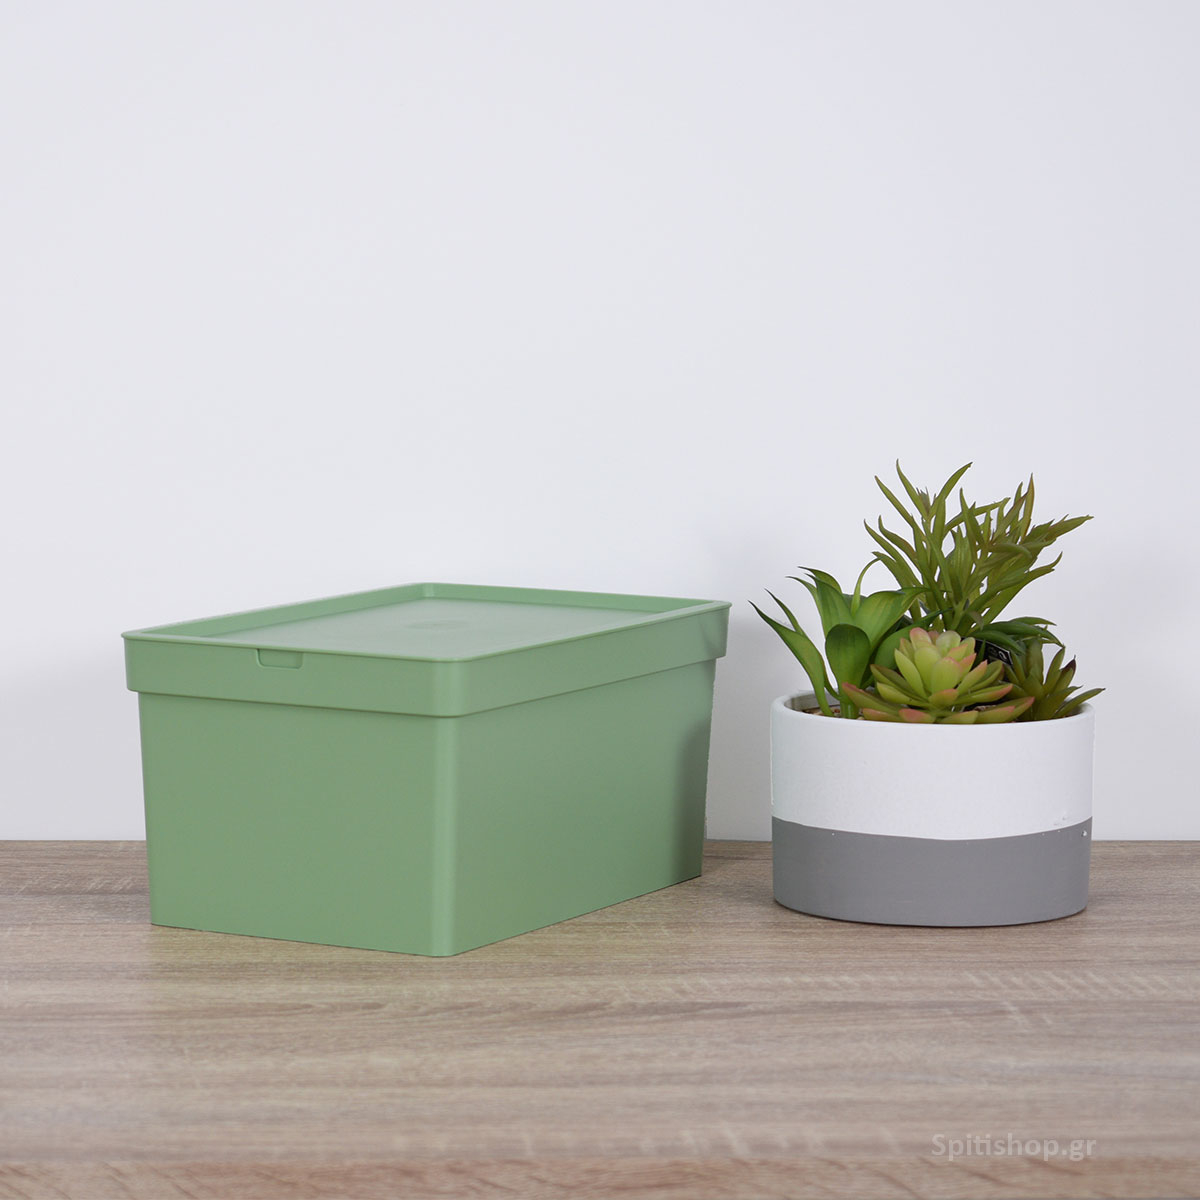 Κουτί Αποθήκευσης (28×18.5×13.5) Viomes Nova 681-27 Πράσινο Ελιάς